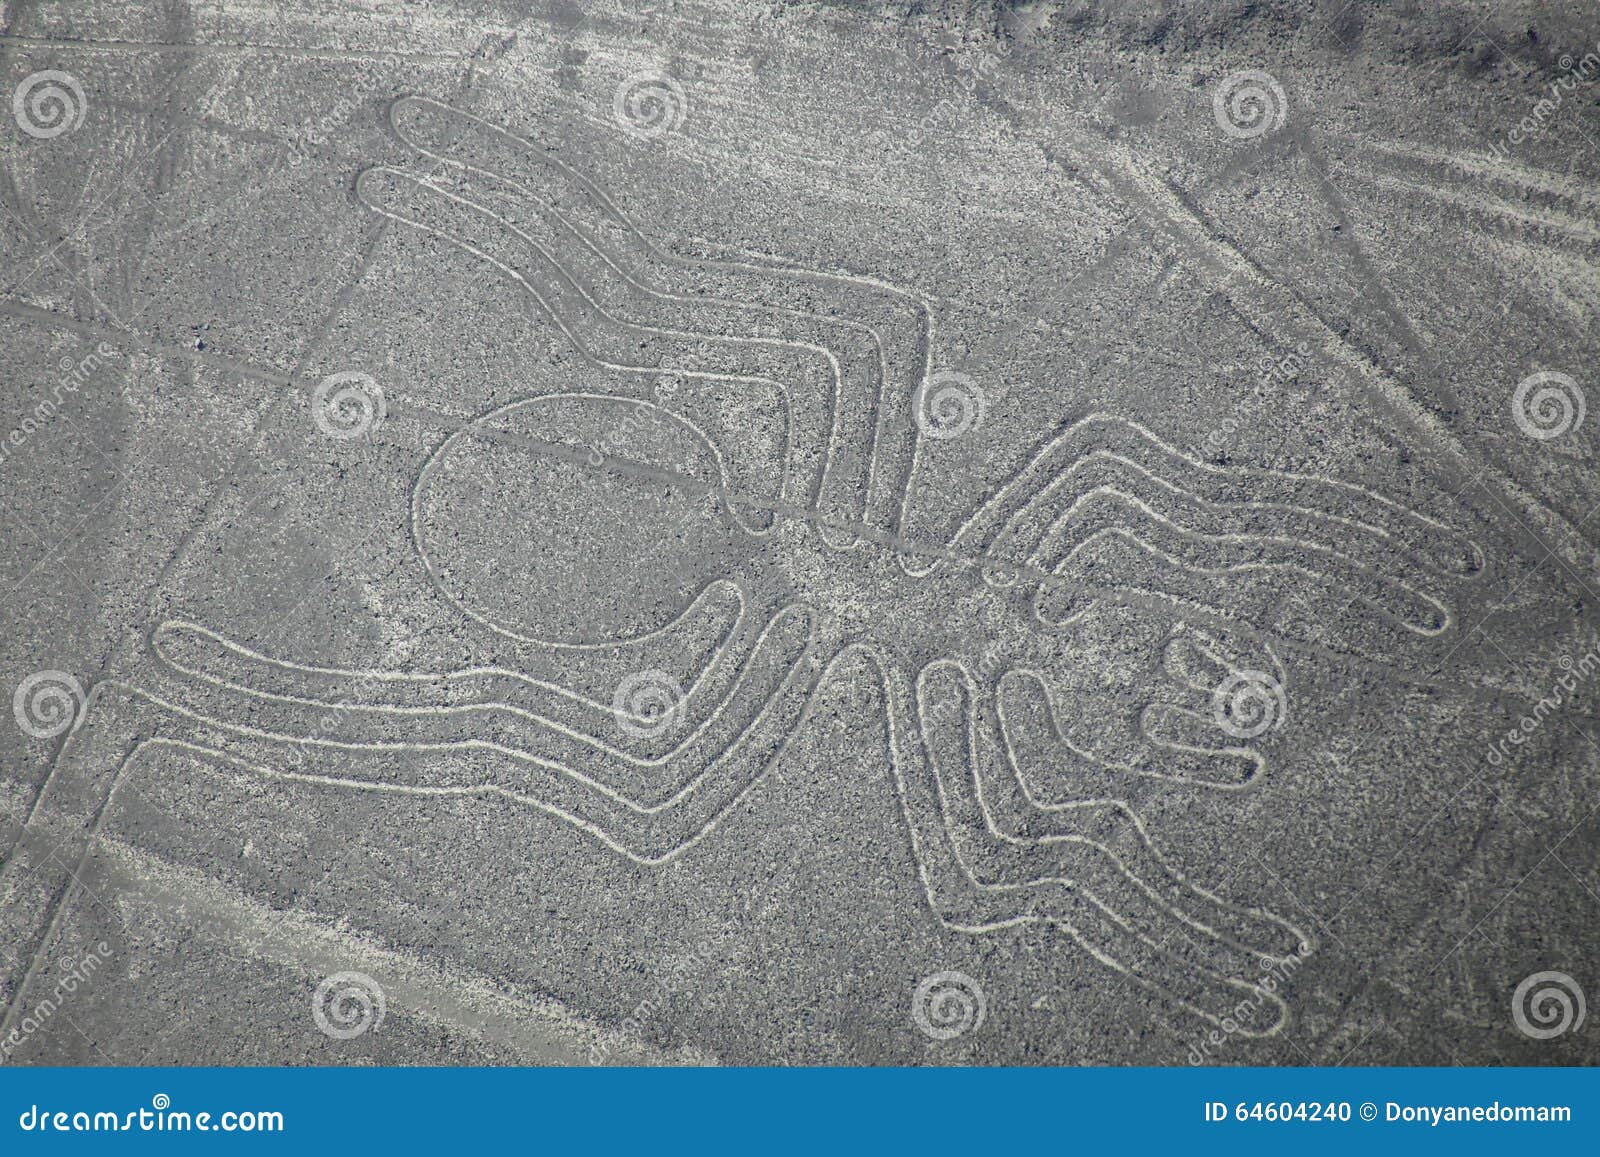 aerial view of nazca lines - spider geoglyph, peru.